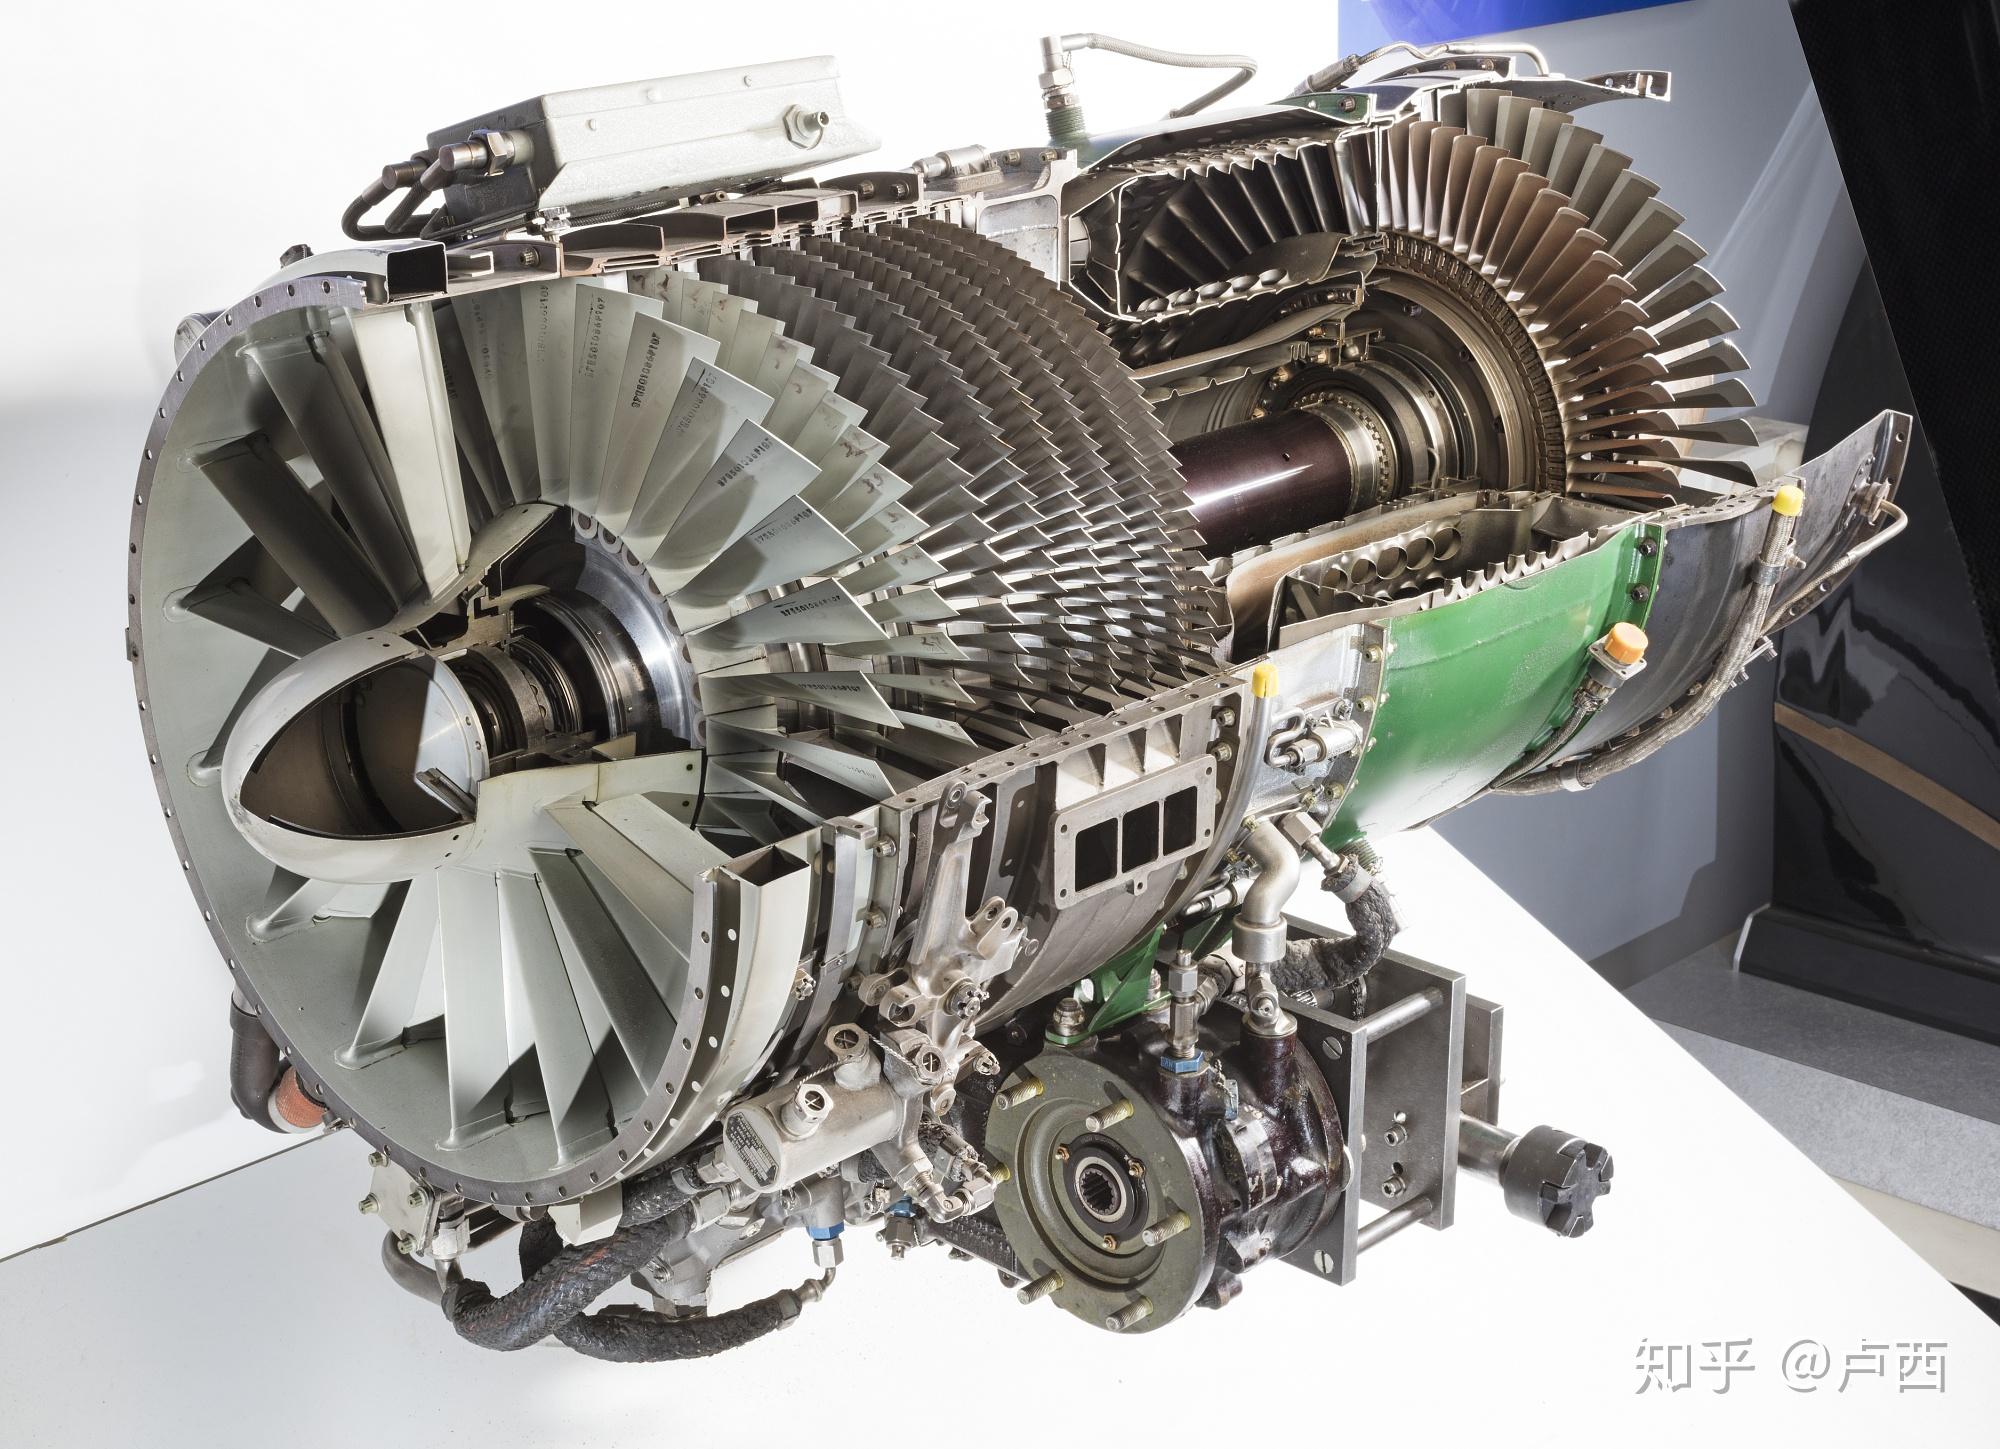 活塞发动机的增压涡轮为什么普遍是离心式而没有轴流式的